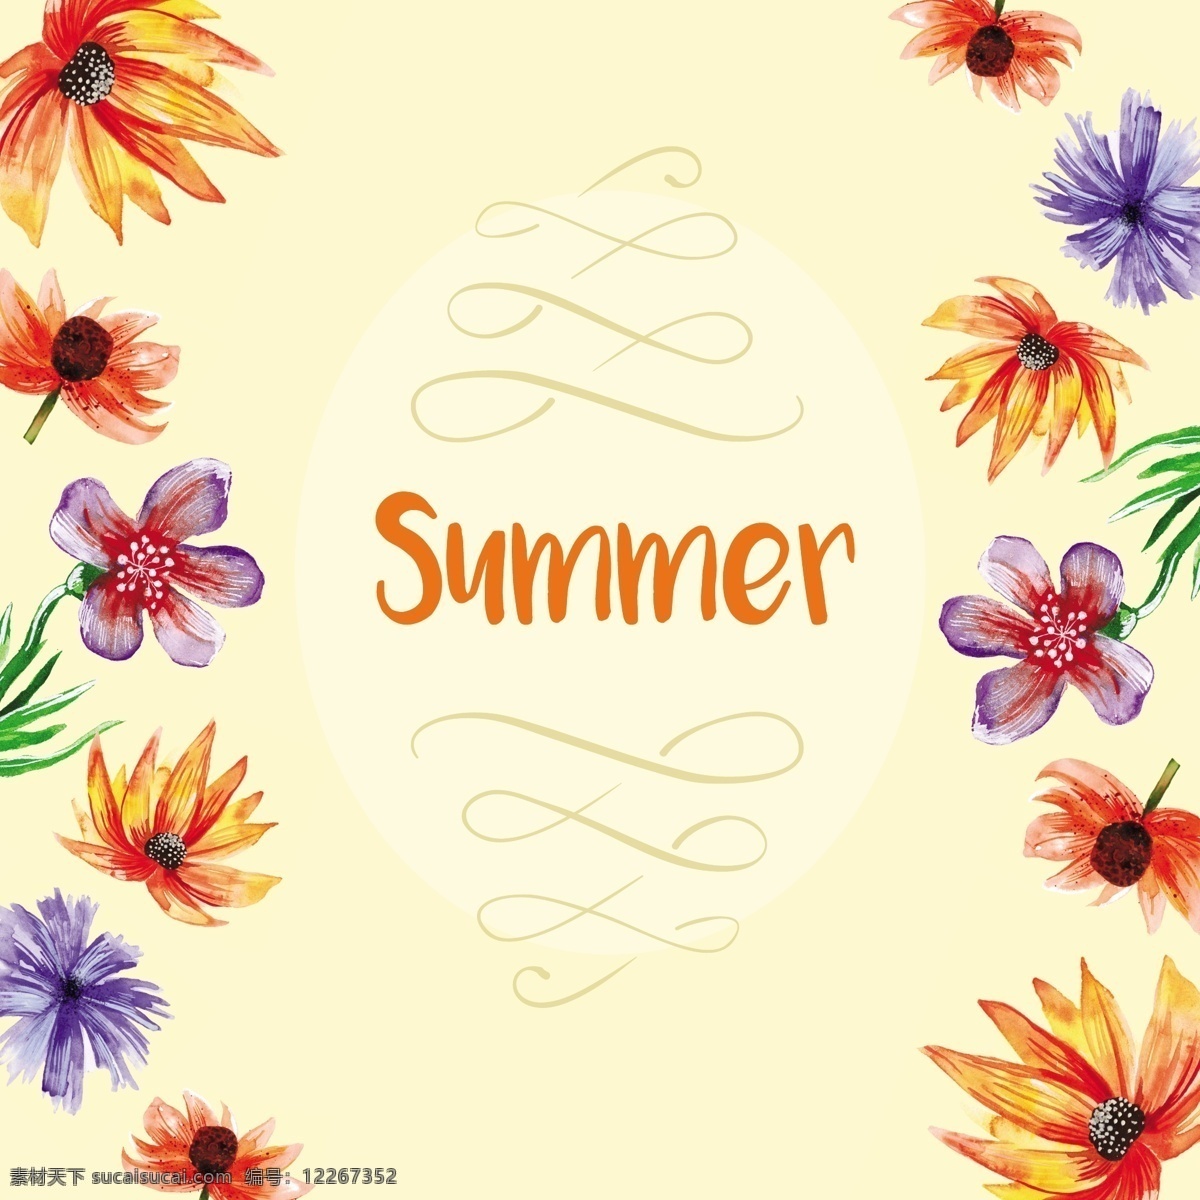 手绘夏天背景 背景 花卉 夏季 水彩 鲜花 手 海滩 油漆 壁纸 度假 热带 夏天 沙滩 节假日 手绘